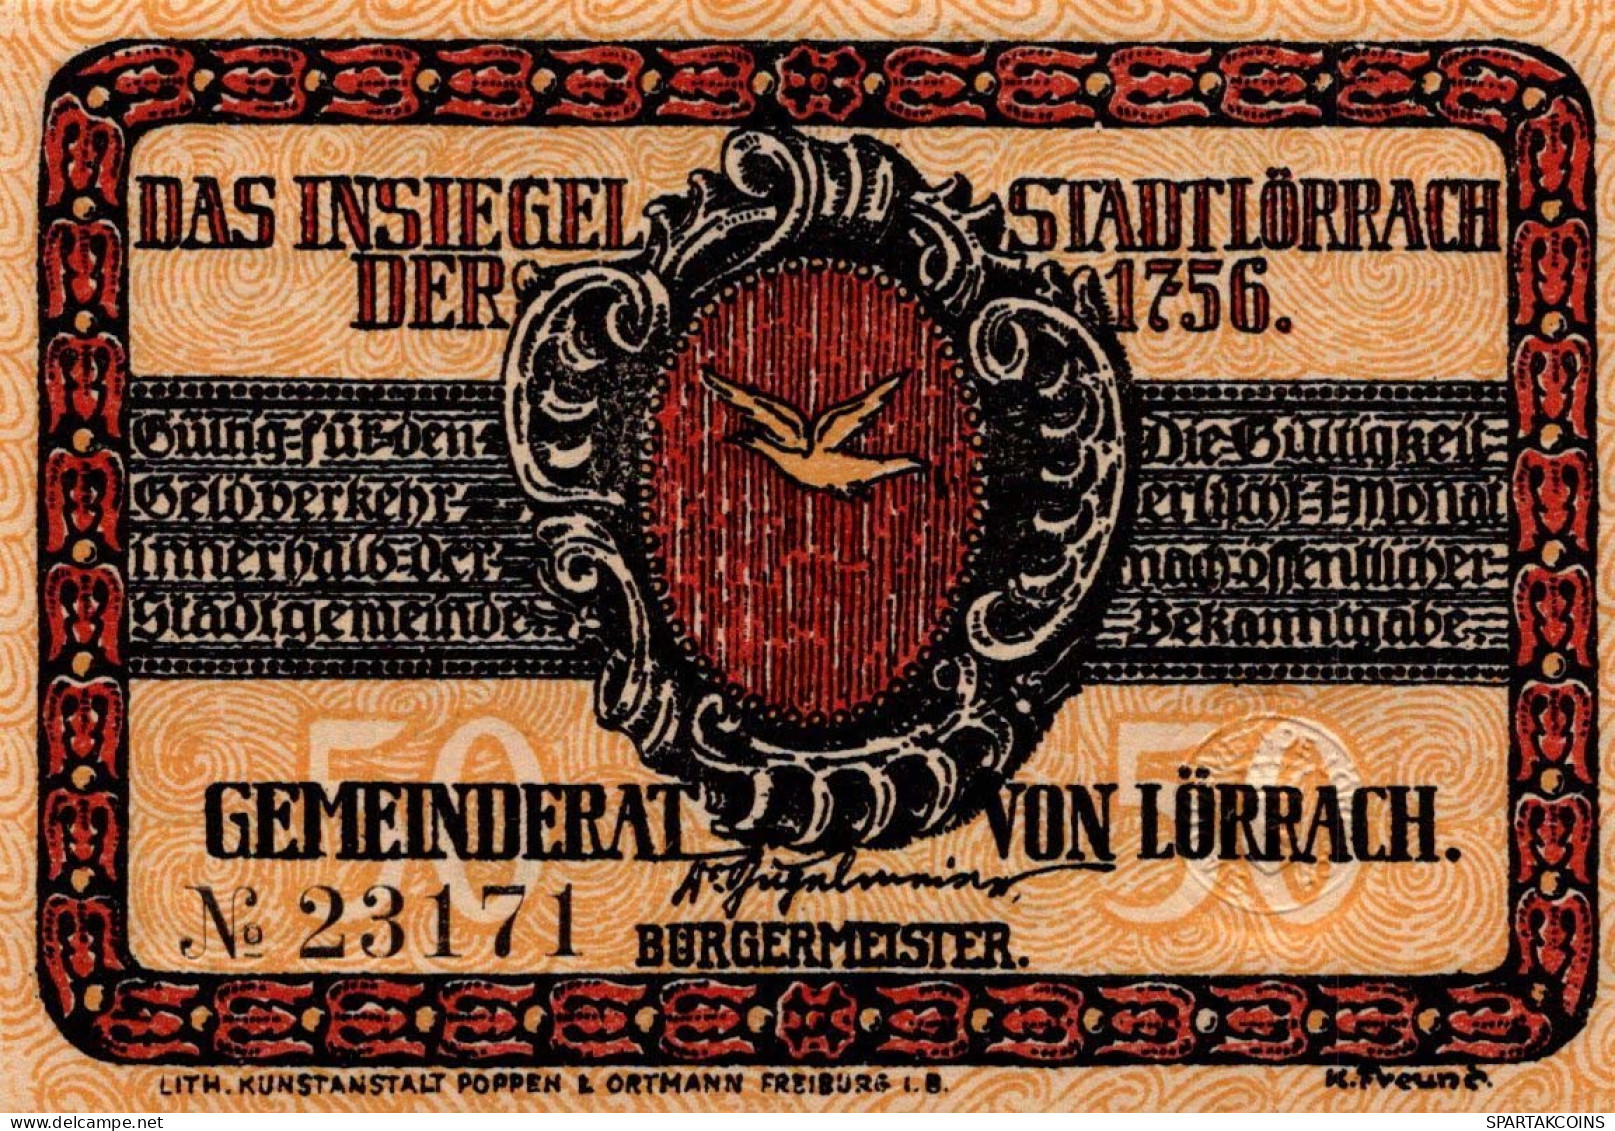 50 PFENNIG 1922 Stadt LoRRACH Baden UNC DEUTSCHLAND Notgeld Banknote #PC488 - [11] Emissions Locales